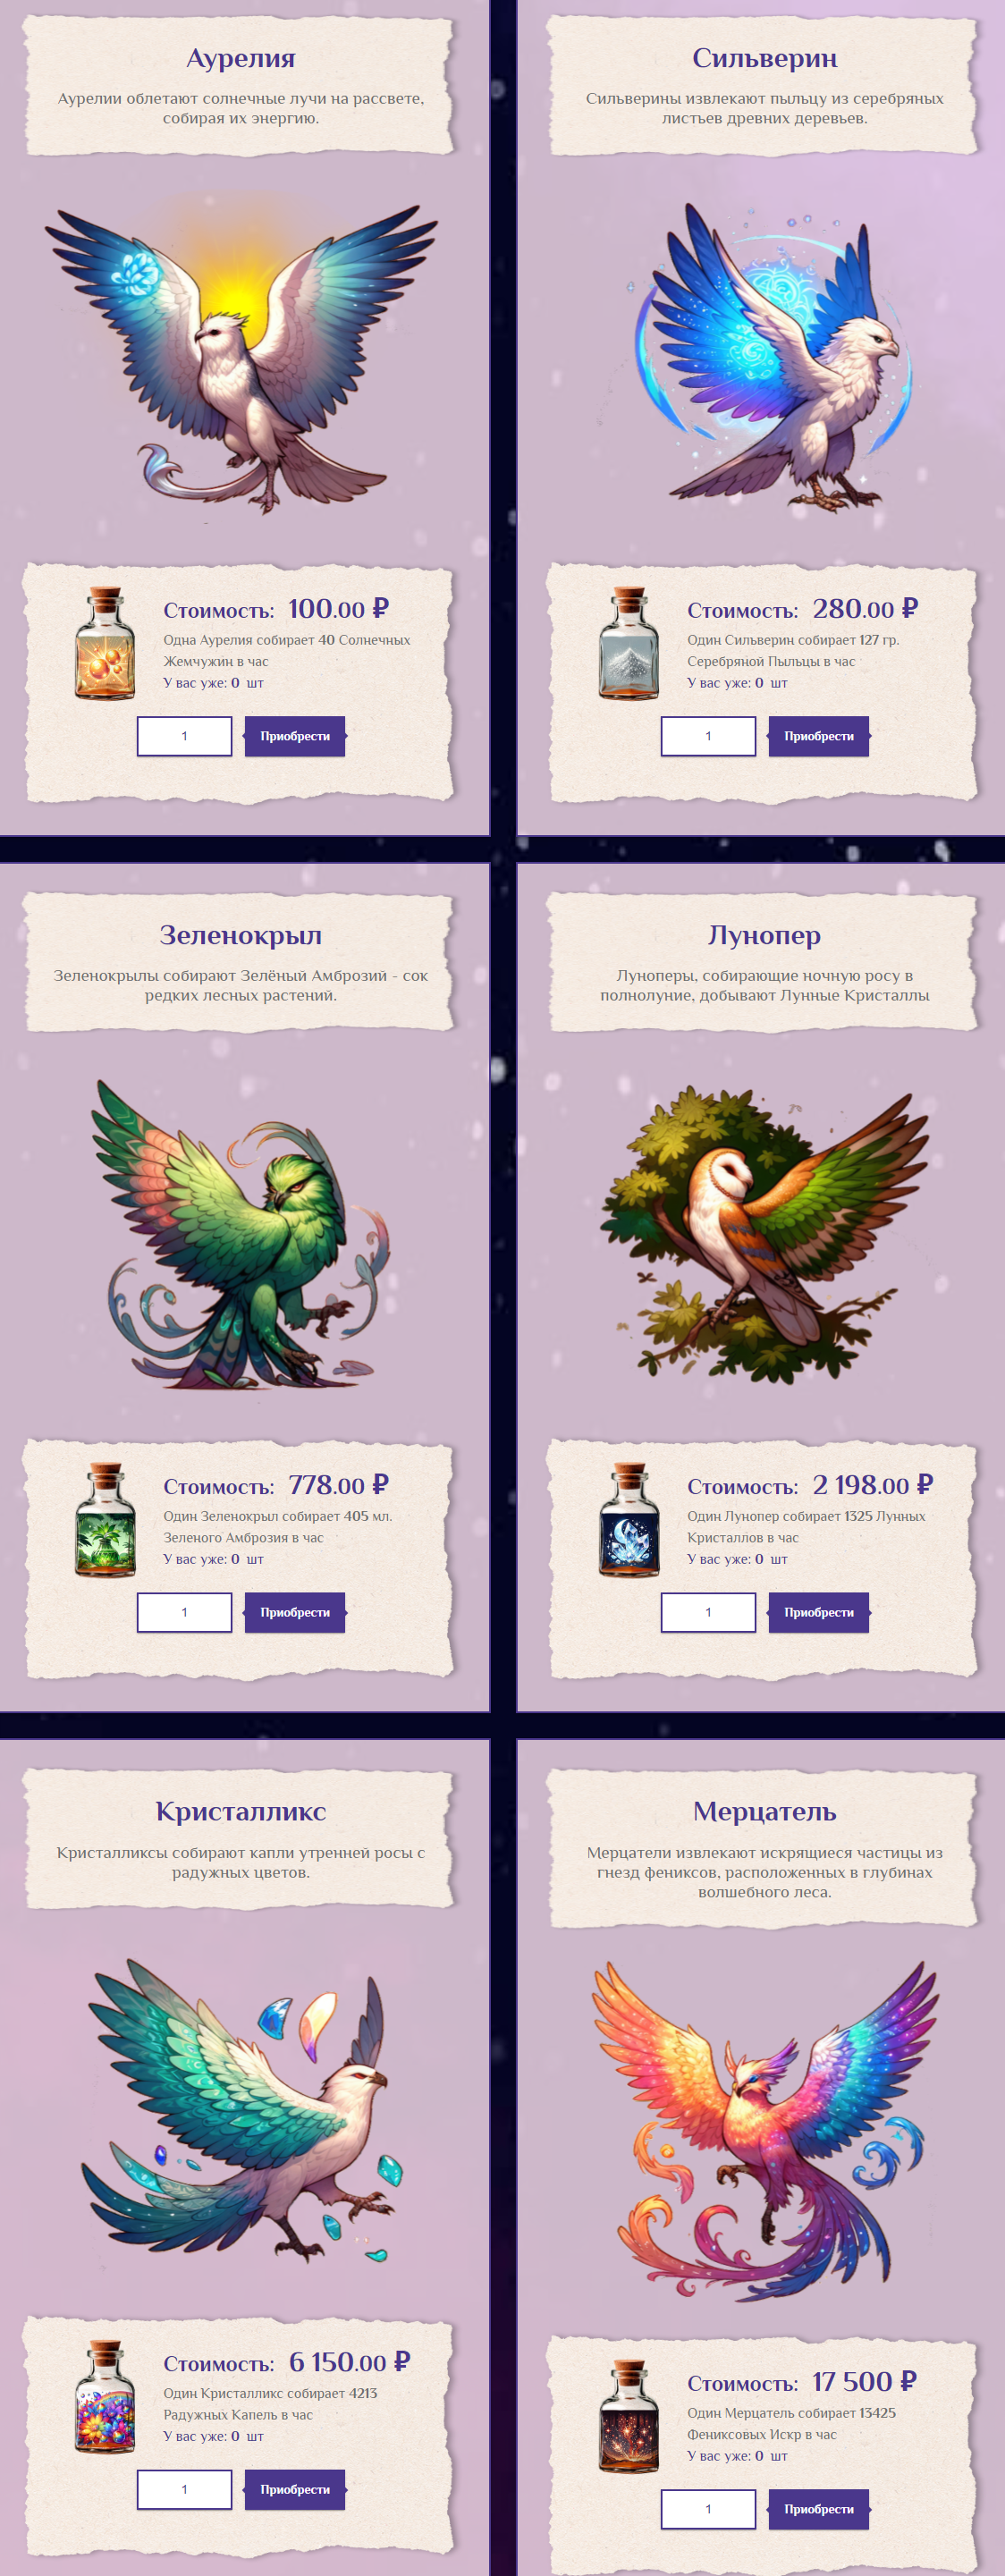 Fairy Wings_ Зачарованный Мир Волшебных Птиц и Скрытых Сокровищ_ - fairywings.quest - маркетинг проекта